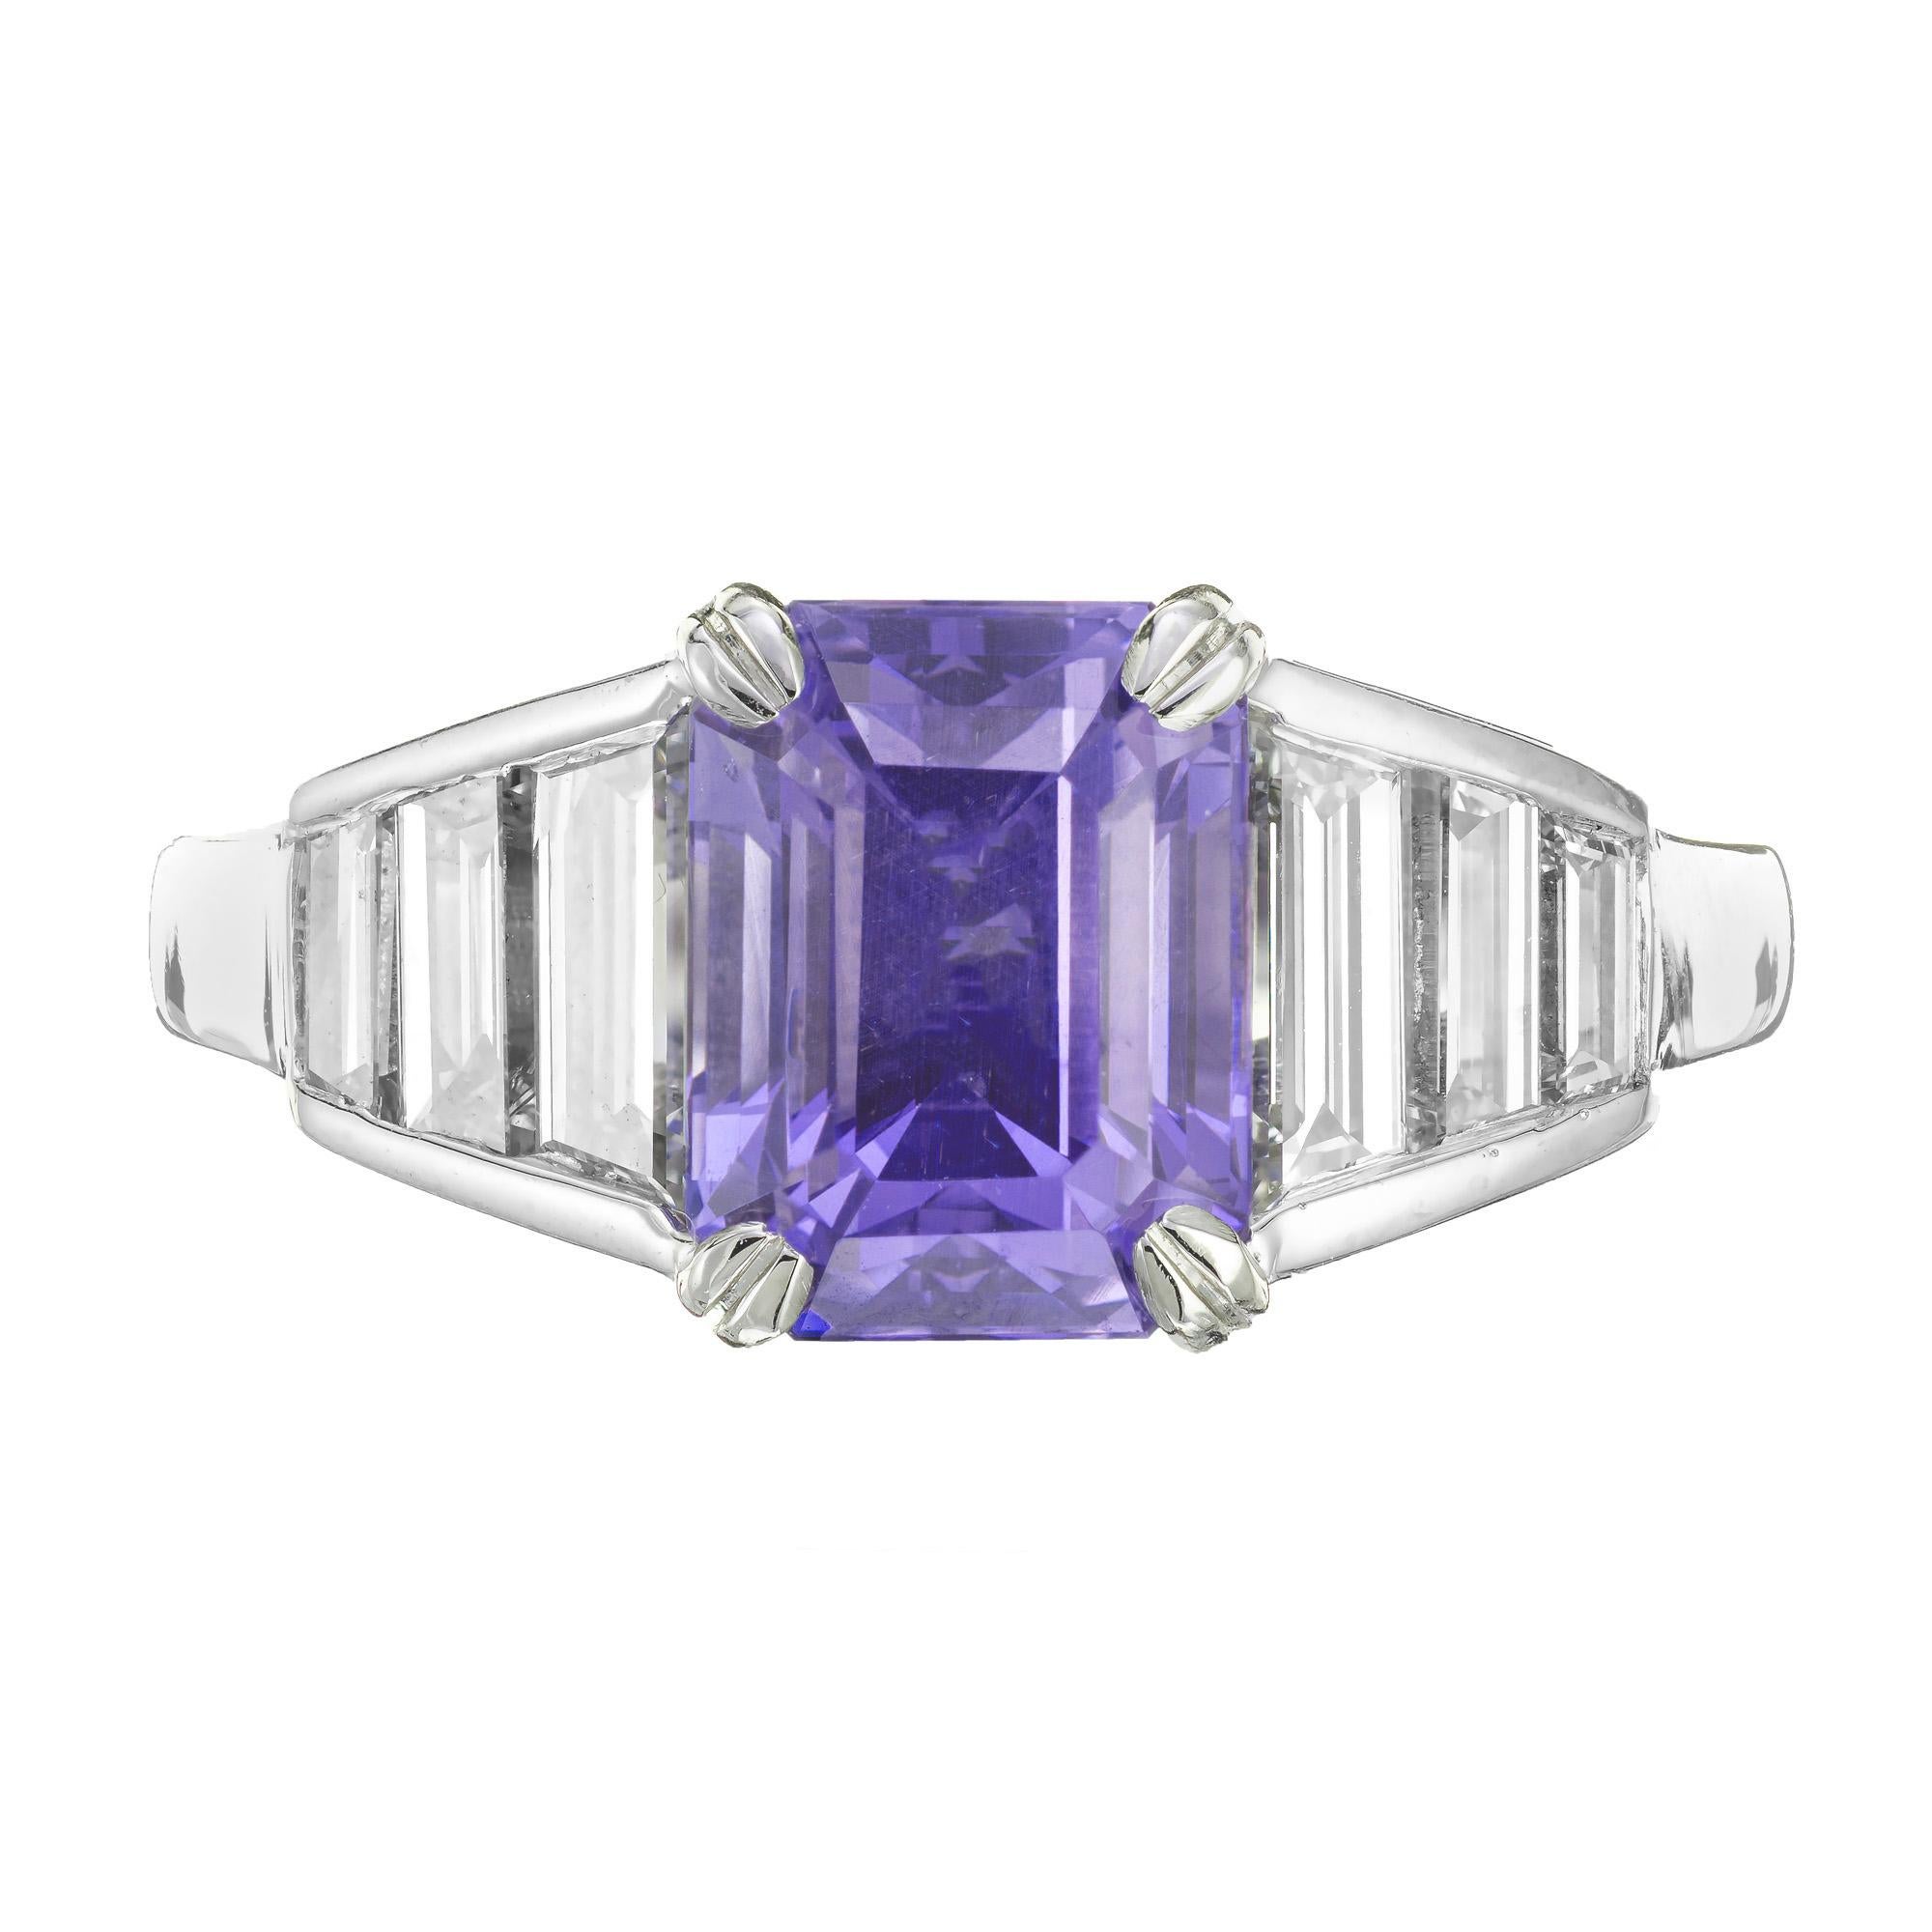 Bague de fiançailles en saphir taille émeraude et diamant. Saphir bleu violet naturel certifié GIA serti dans une monture en platine avec 6 diamants baguettes de taille émeraude. 

1 Saphir bleu violet taille émeraude, poids total approx. 3,67cts,